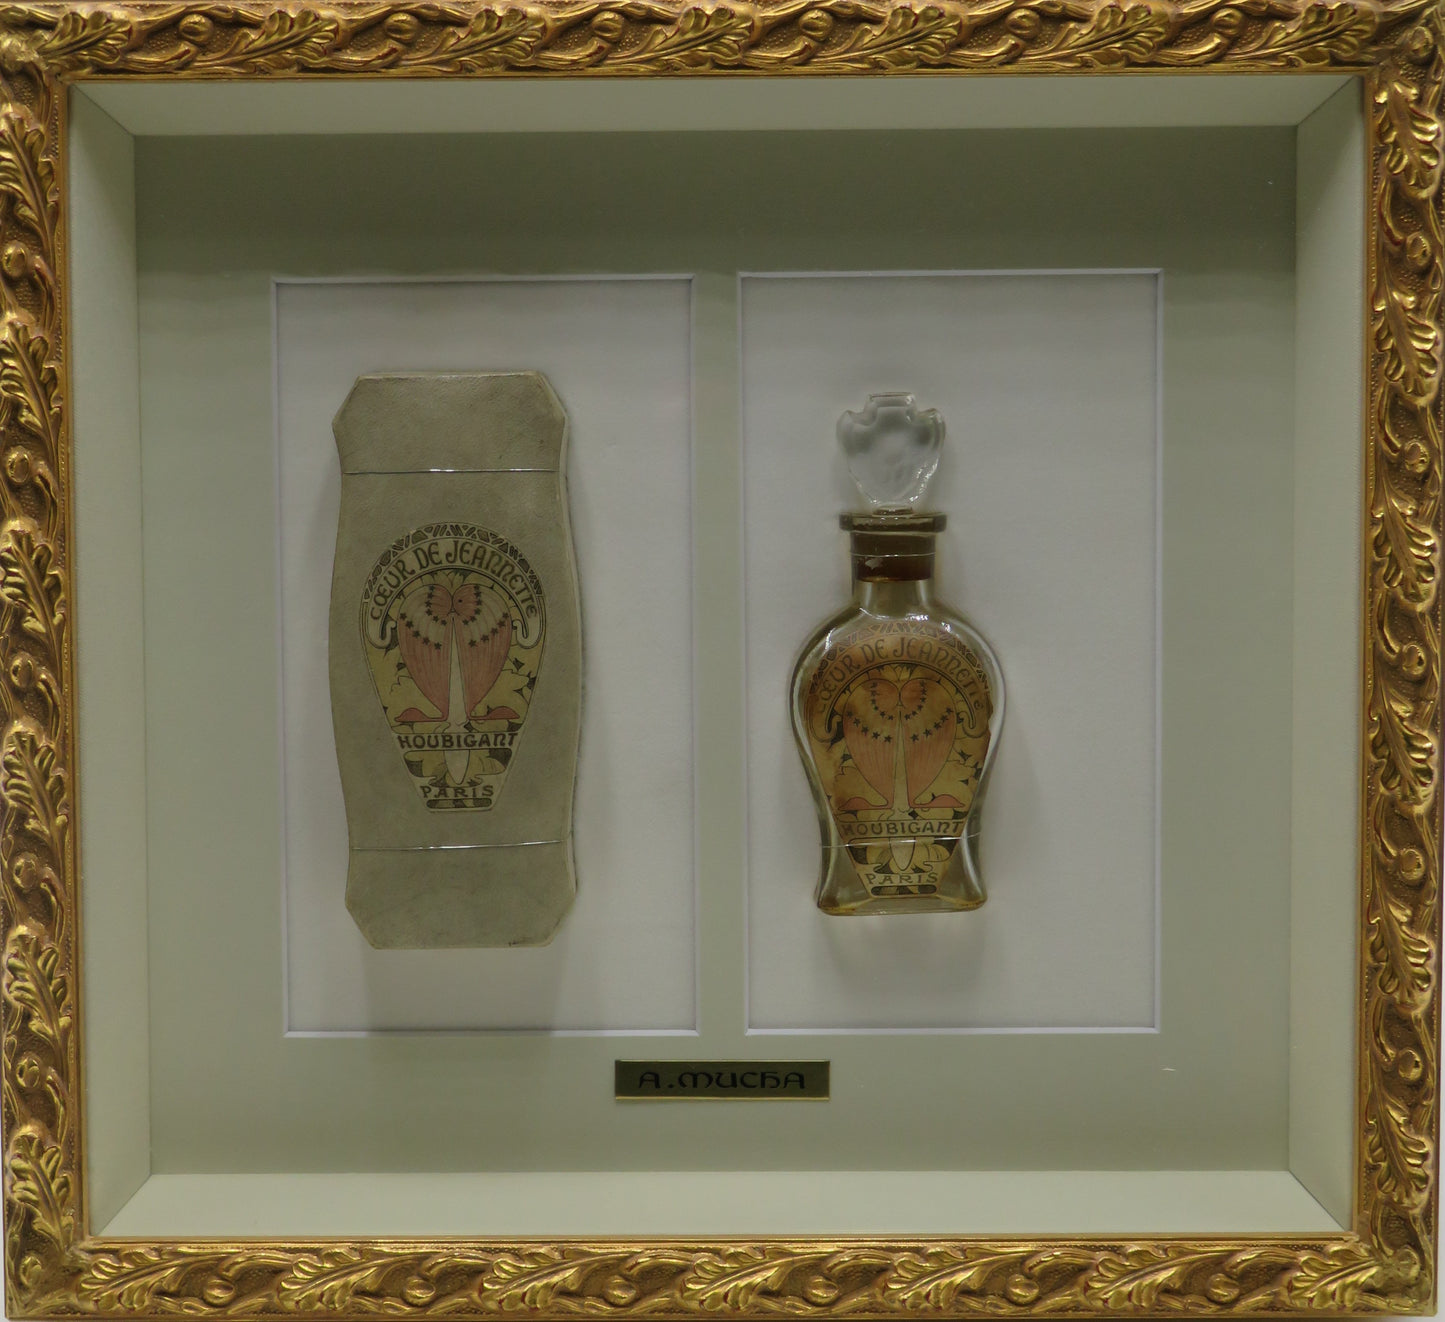 アルフォンス・ミュシャ「ウビガン香水 ジャネットハートのパッケージと瓶」